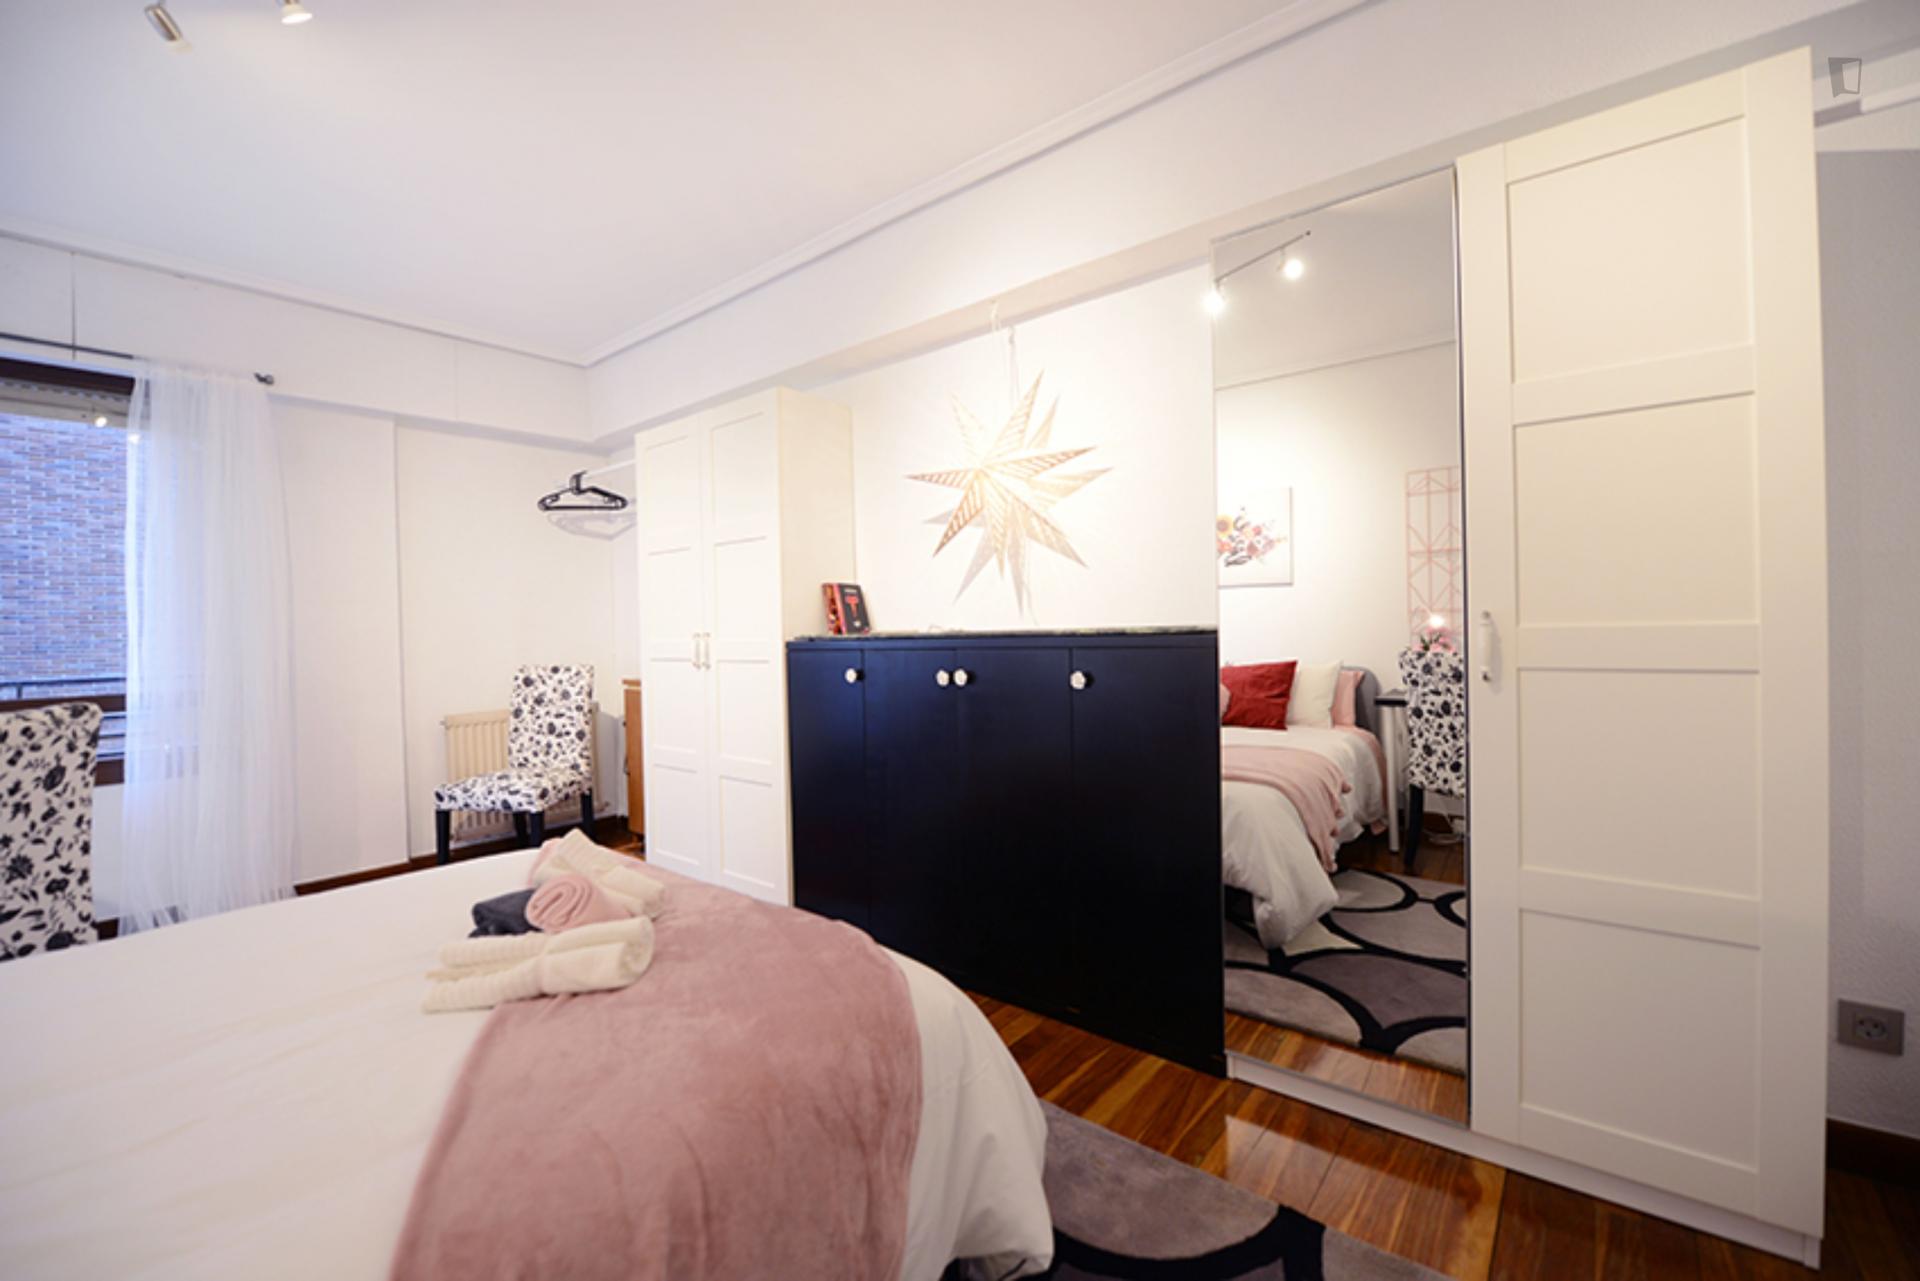 Kalea - Double bedroom in Bilbao